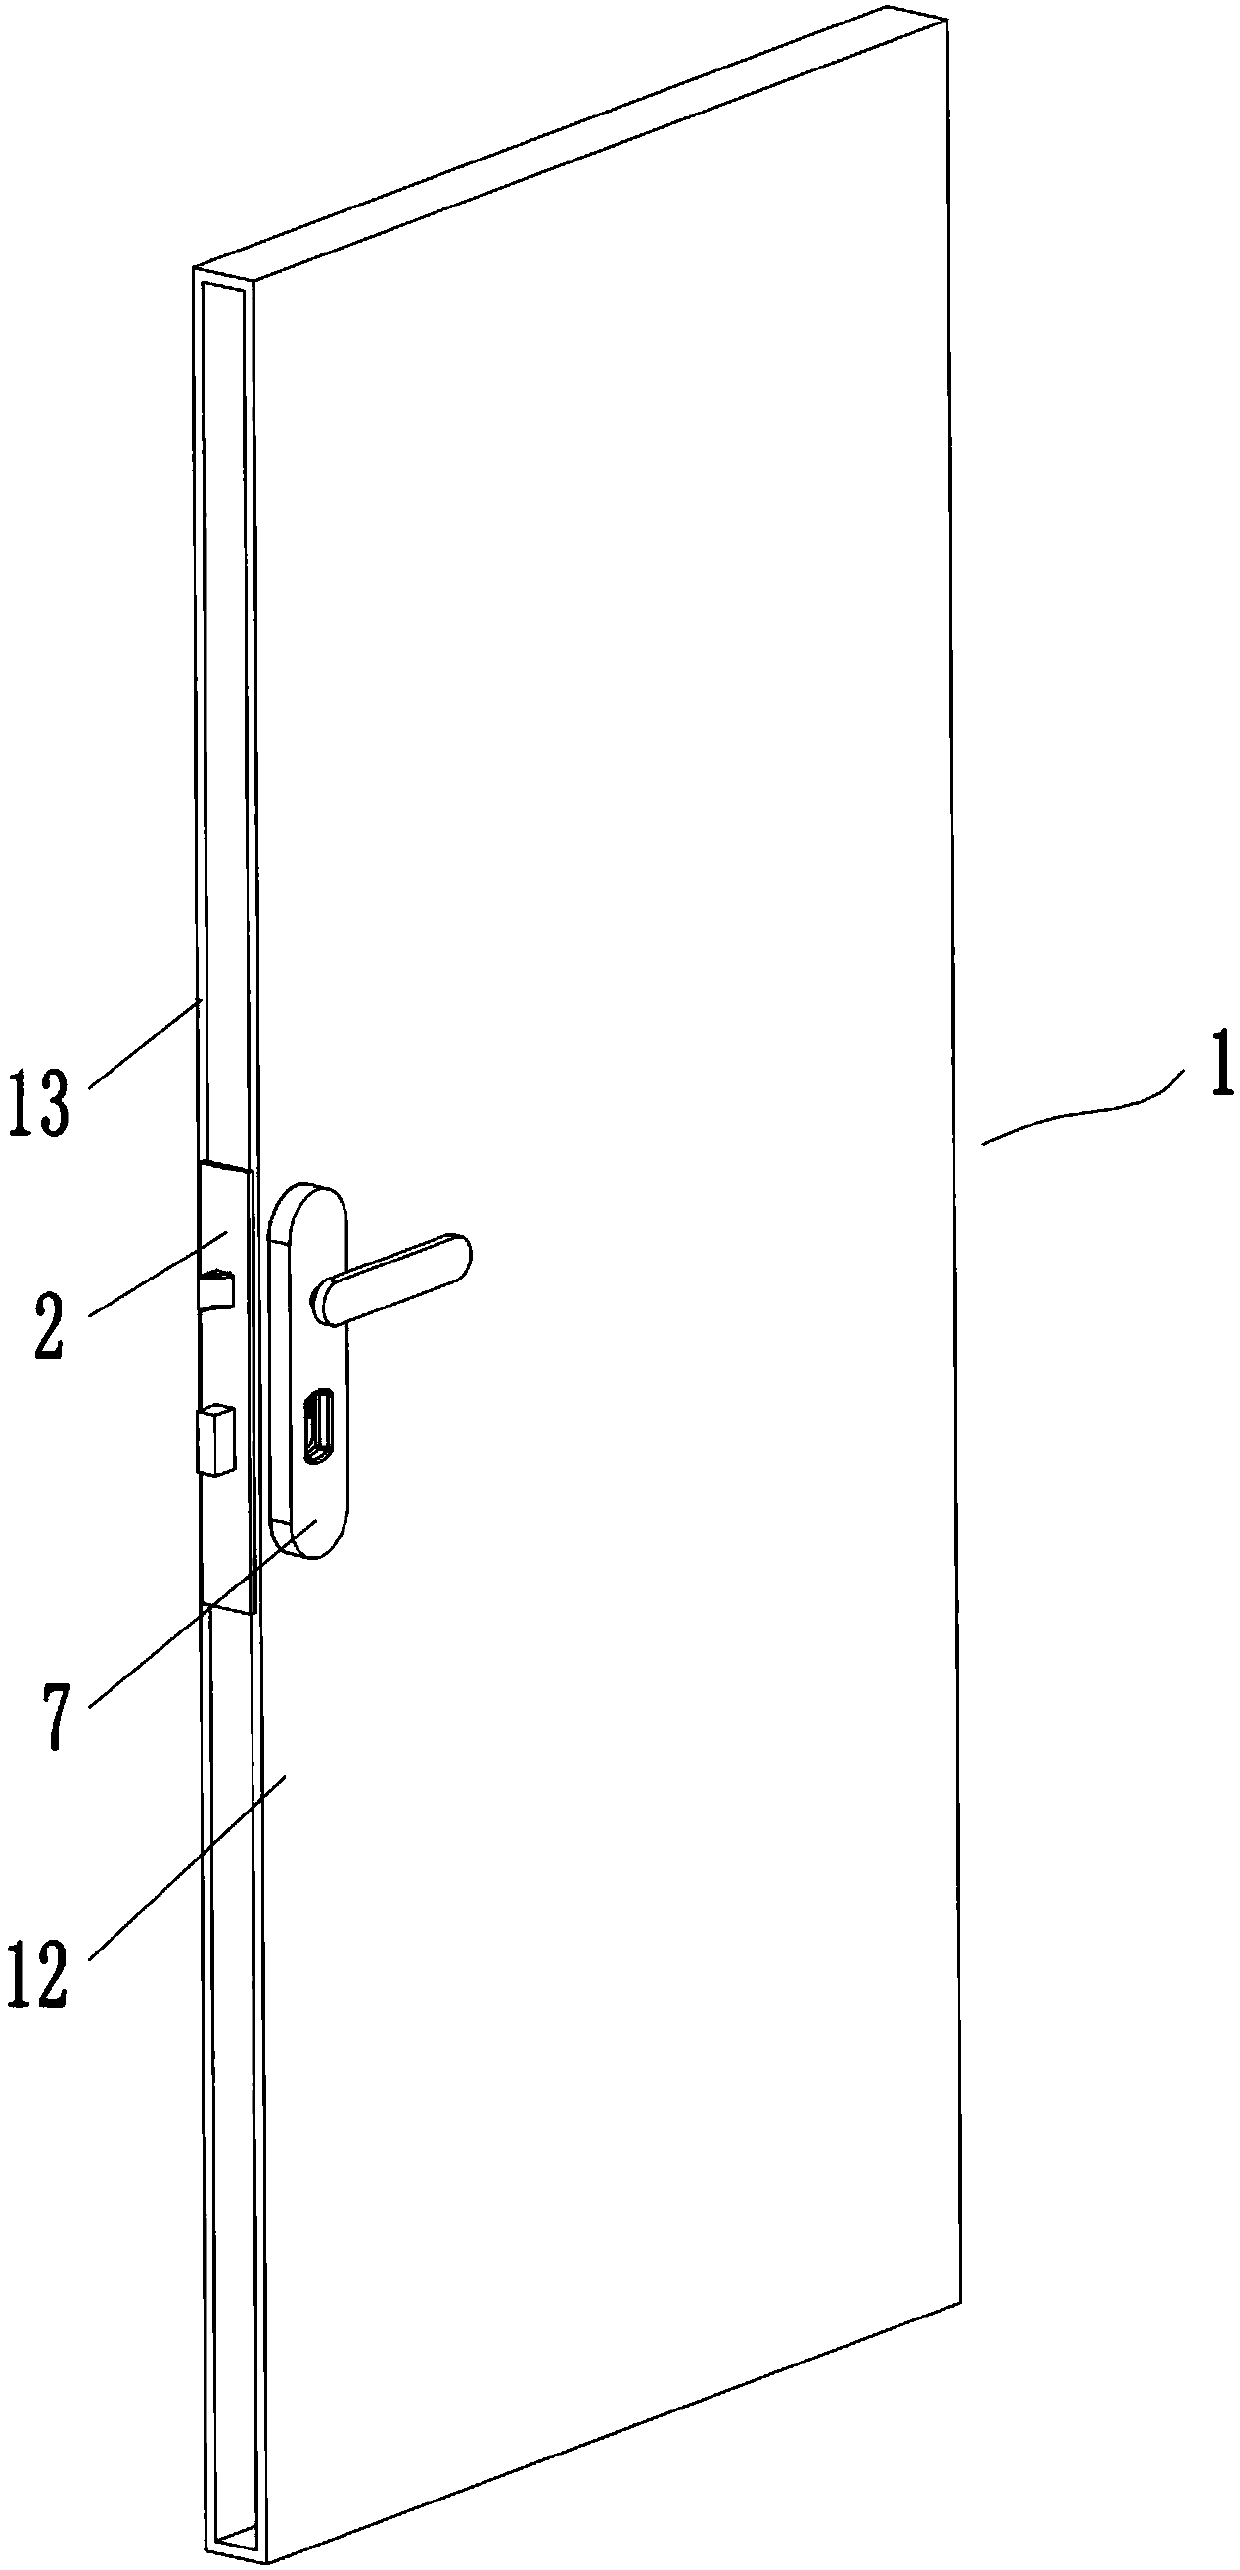 Pickproof door lock structure